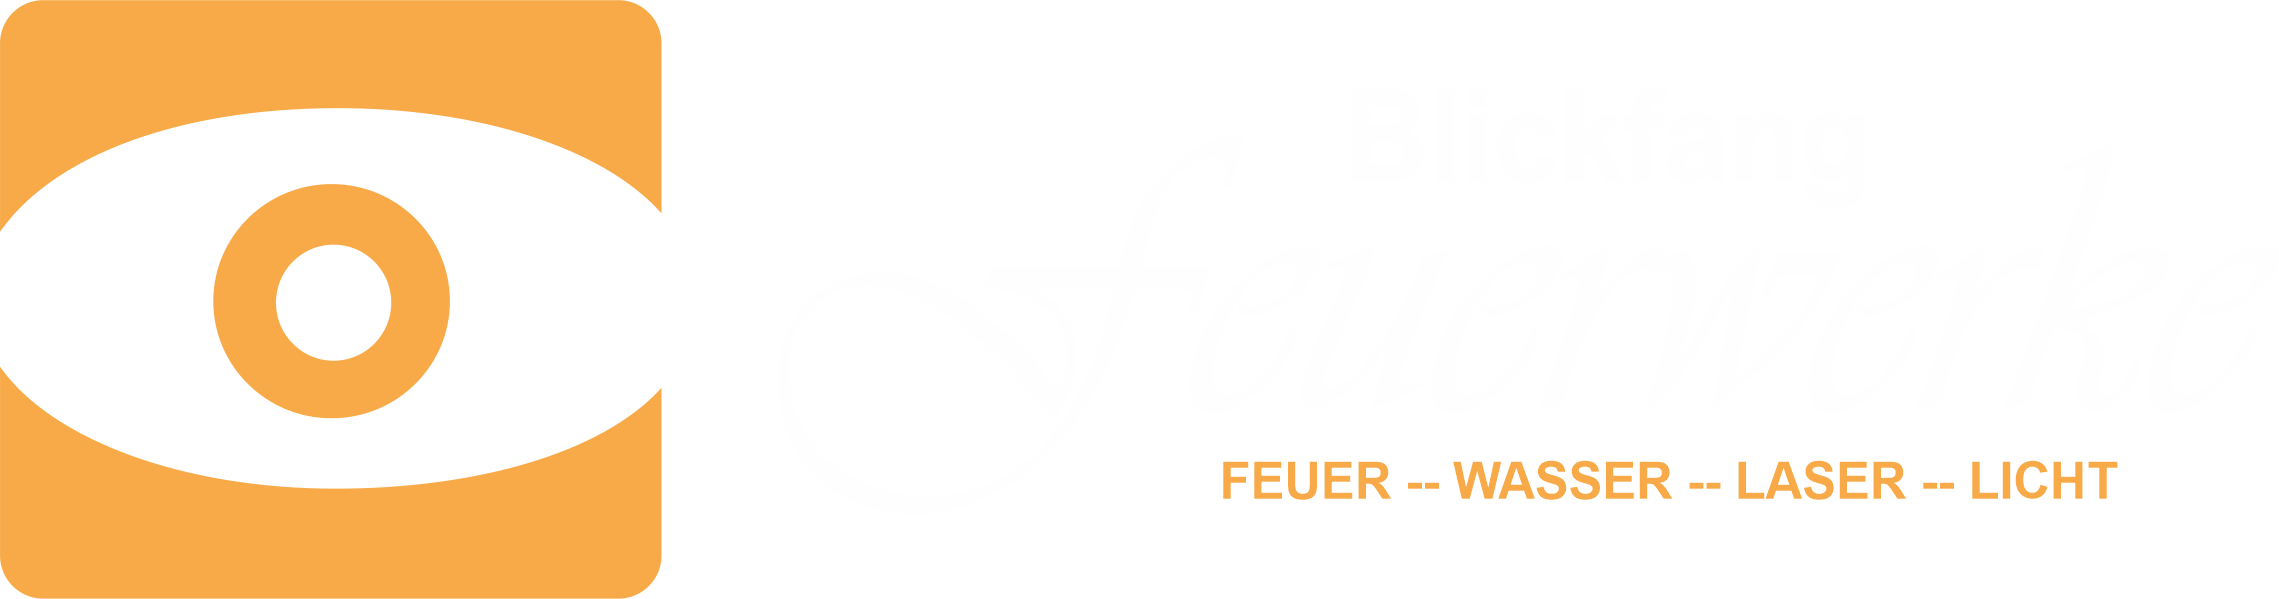 Blickfang Bielefeld